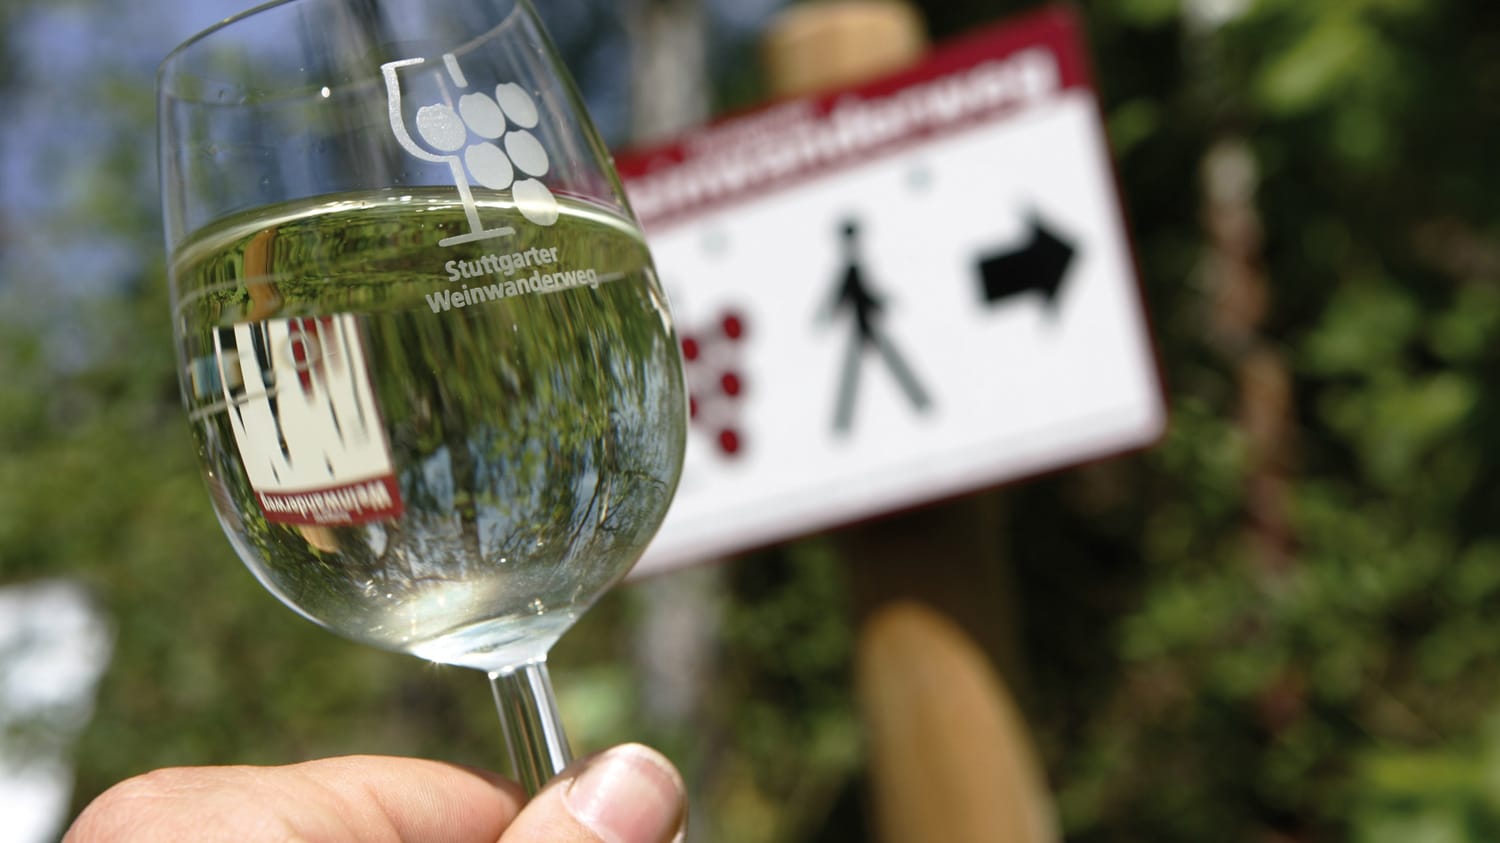 Glas Weißwein vor Schild Weinwanderweg